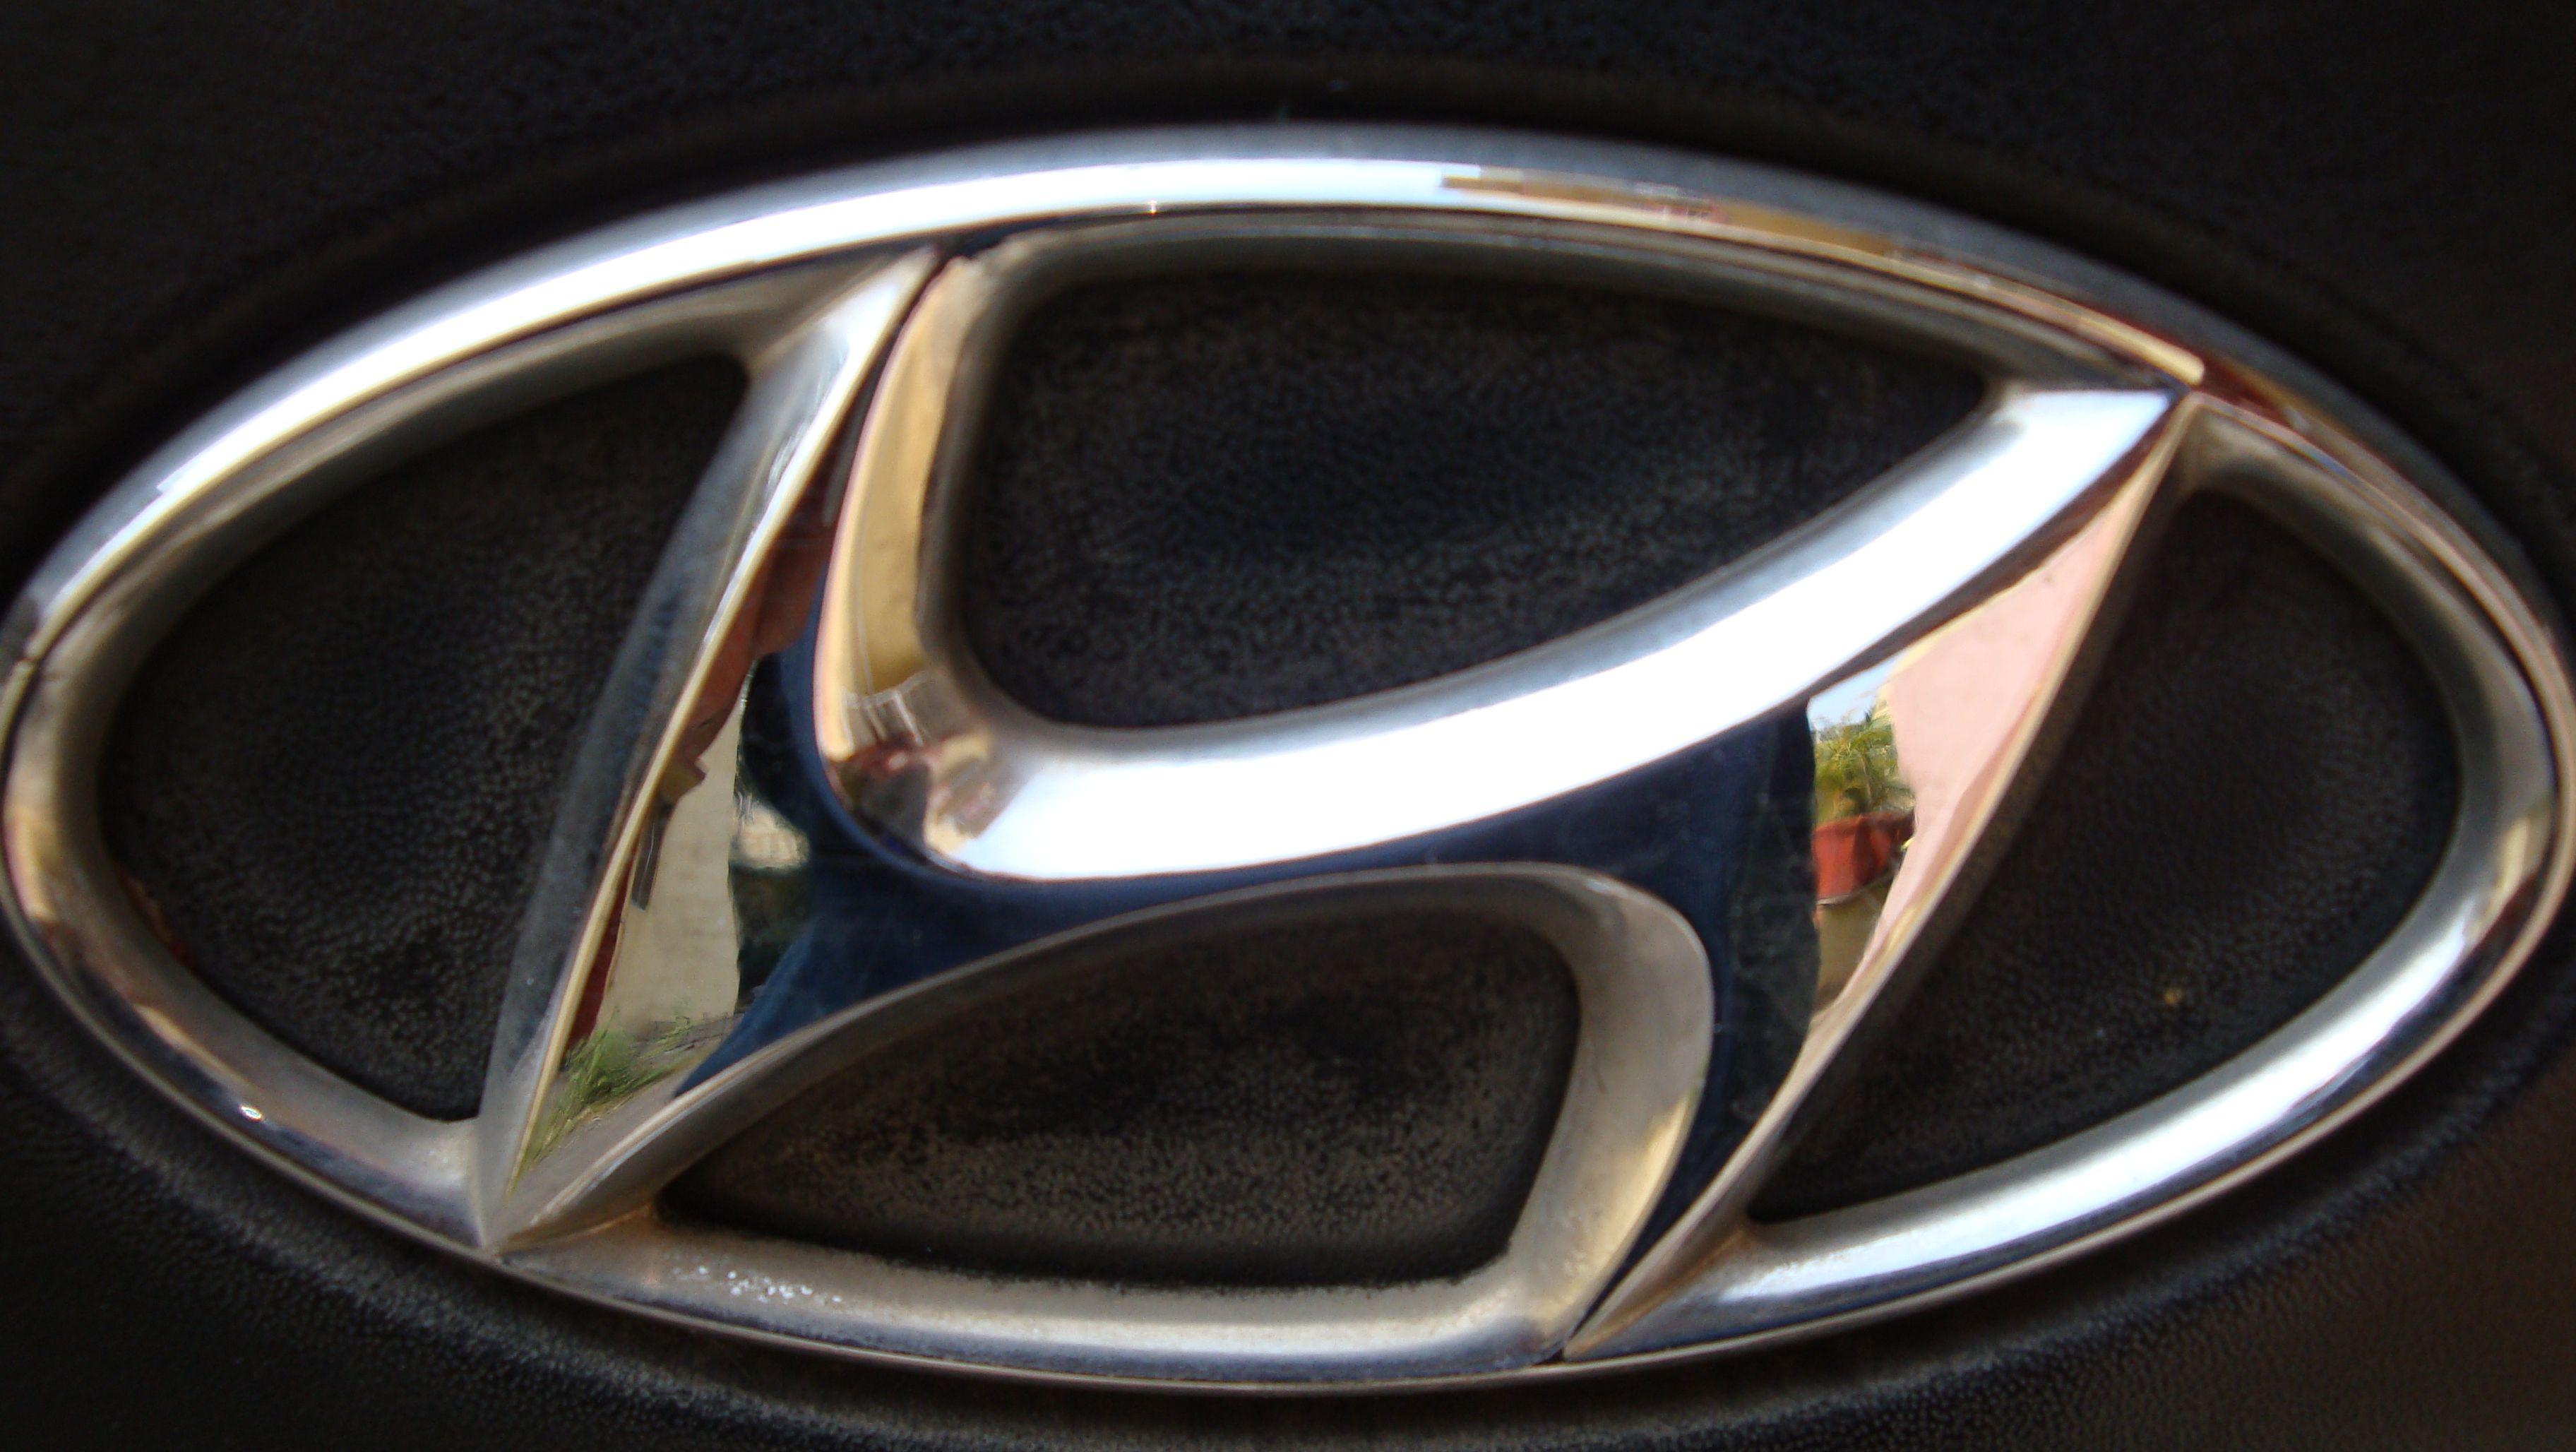 Old Hyundai Logo - Hyundai Logo, Huyndai Car Symbol Meaning and History. Car Brand